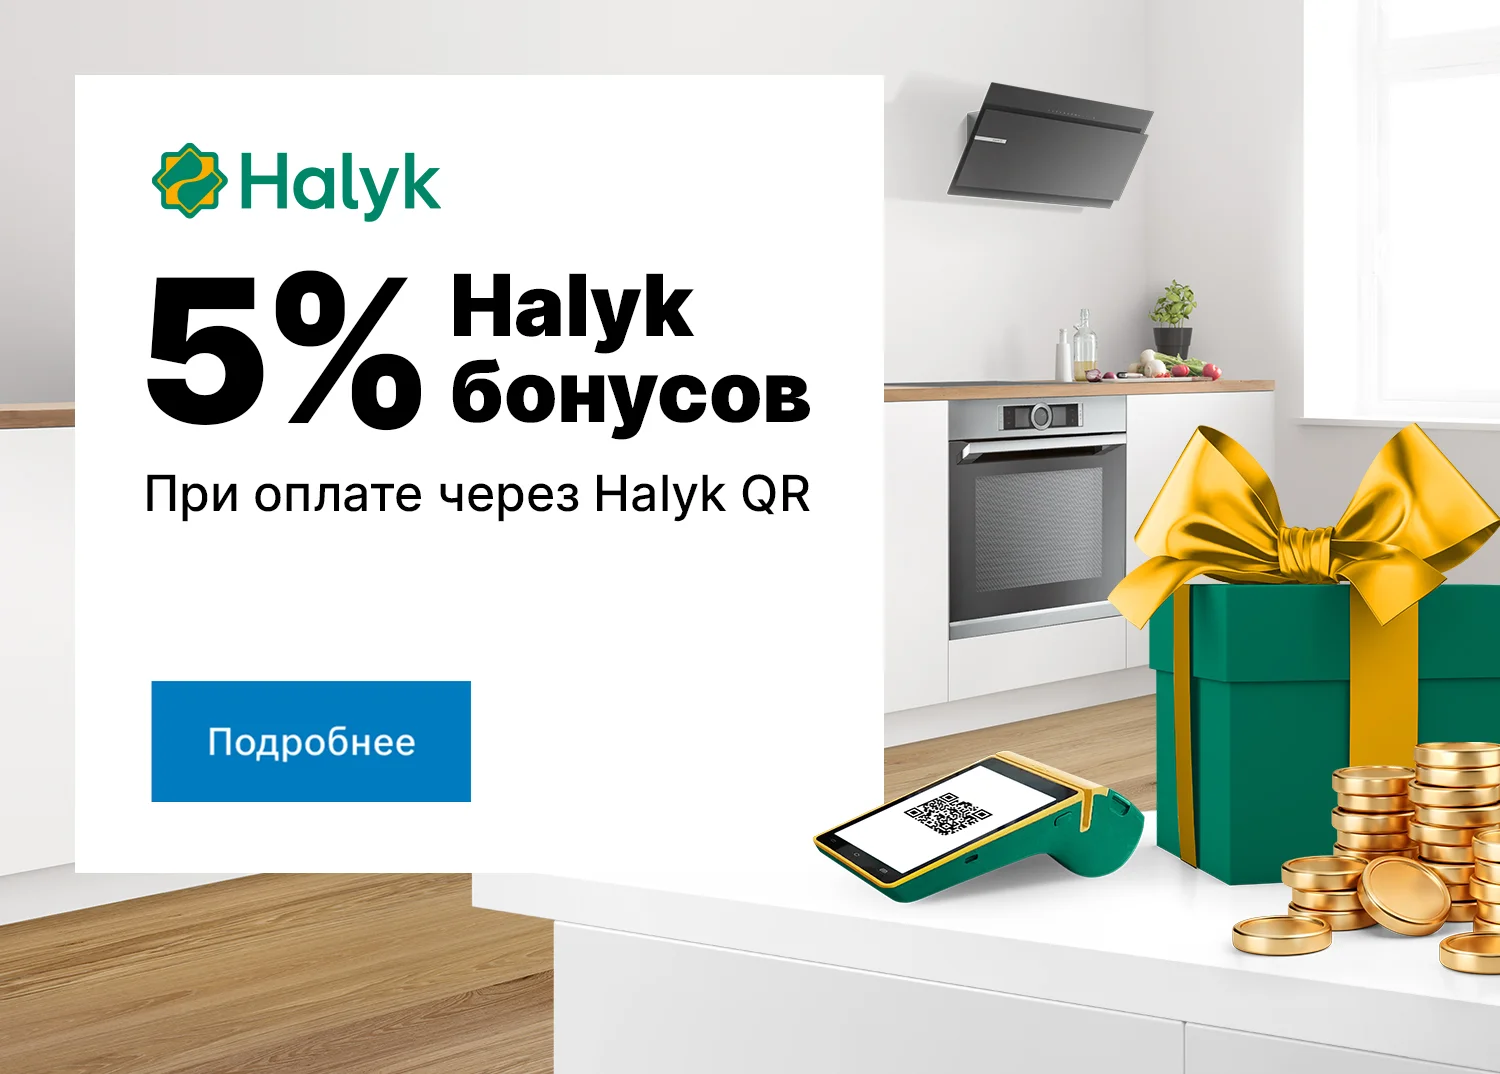 5% бонусов при оплате через Halyk QR